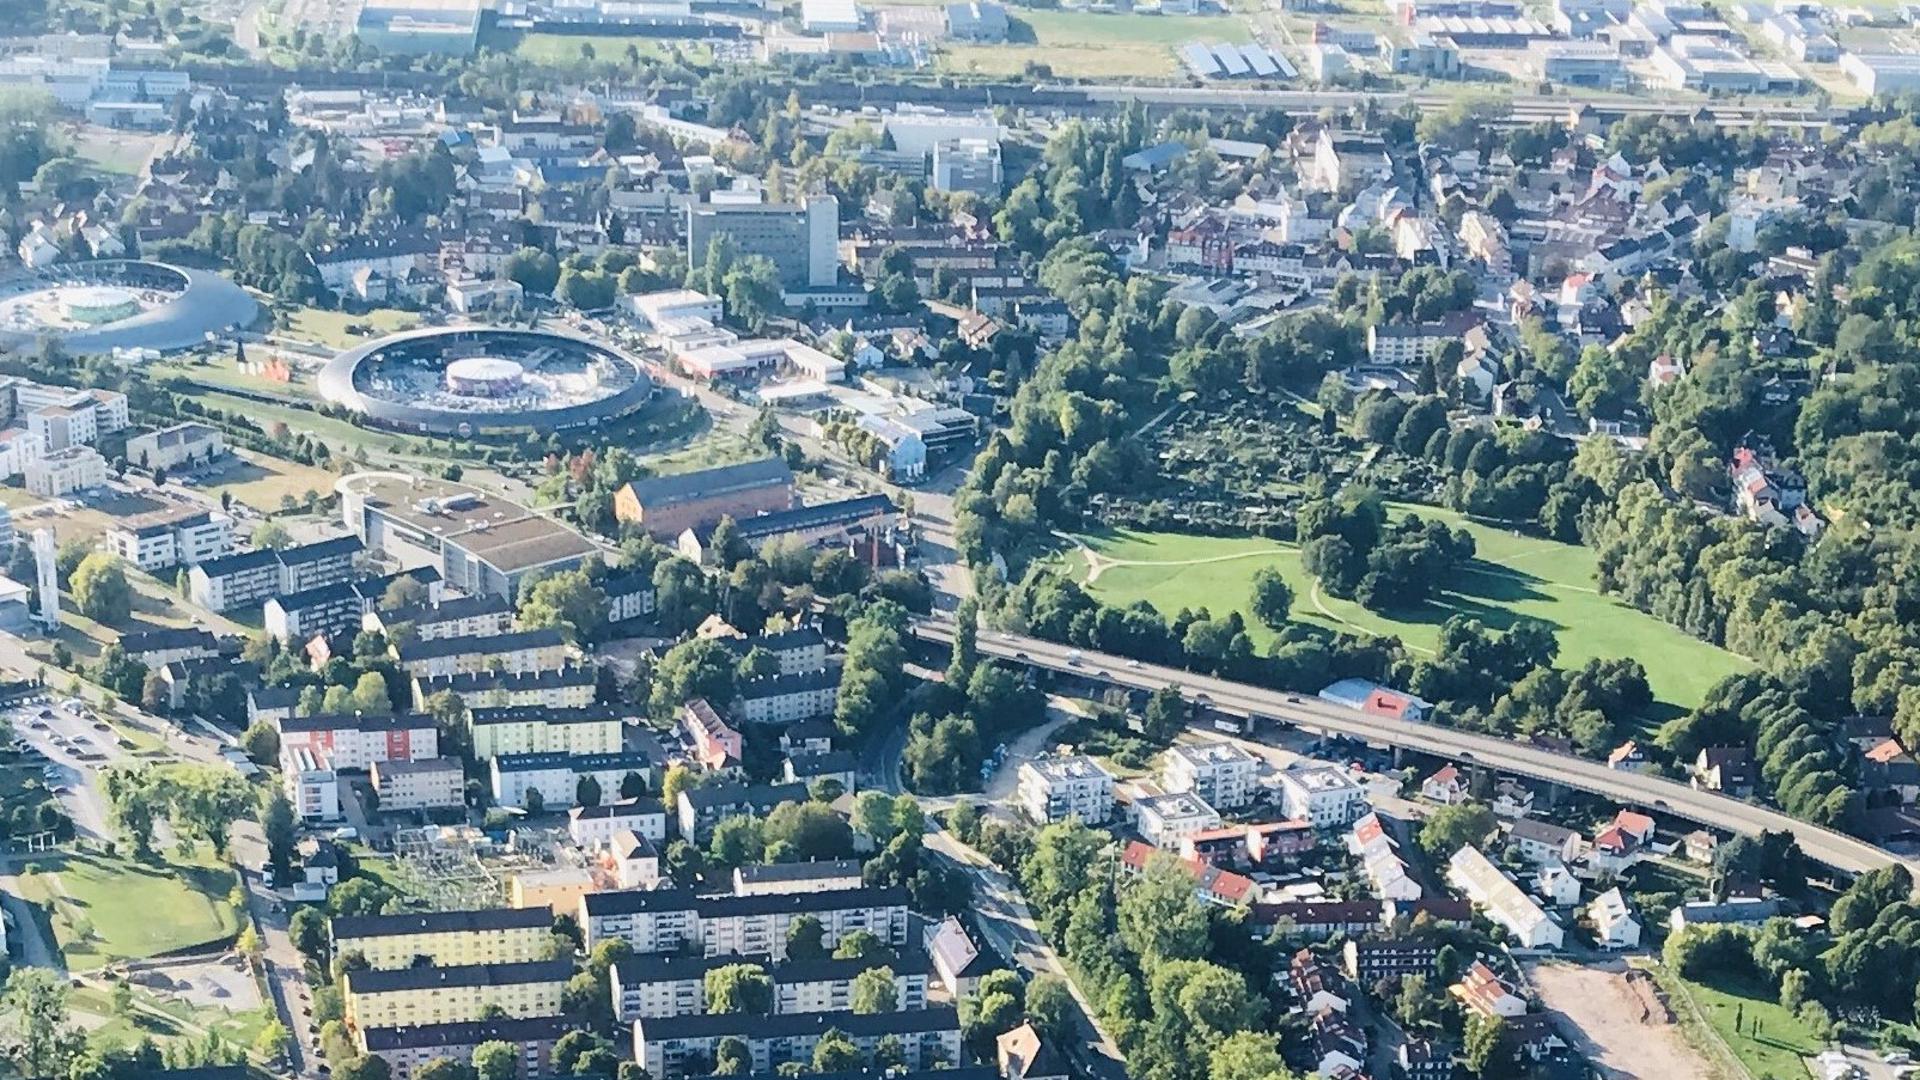 Zur Landesgartenschau 1981 wurde der Wörthböschelpark in der Nachbarschaft des Fachmarktzentrums angelegt. 